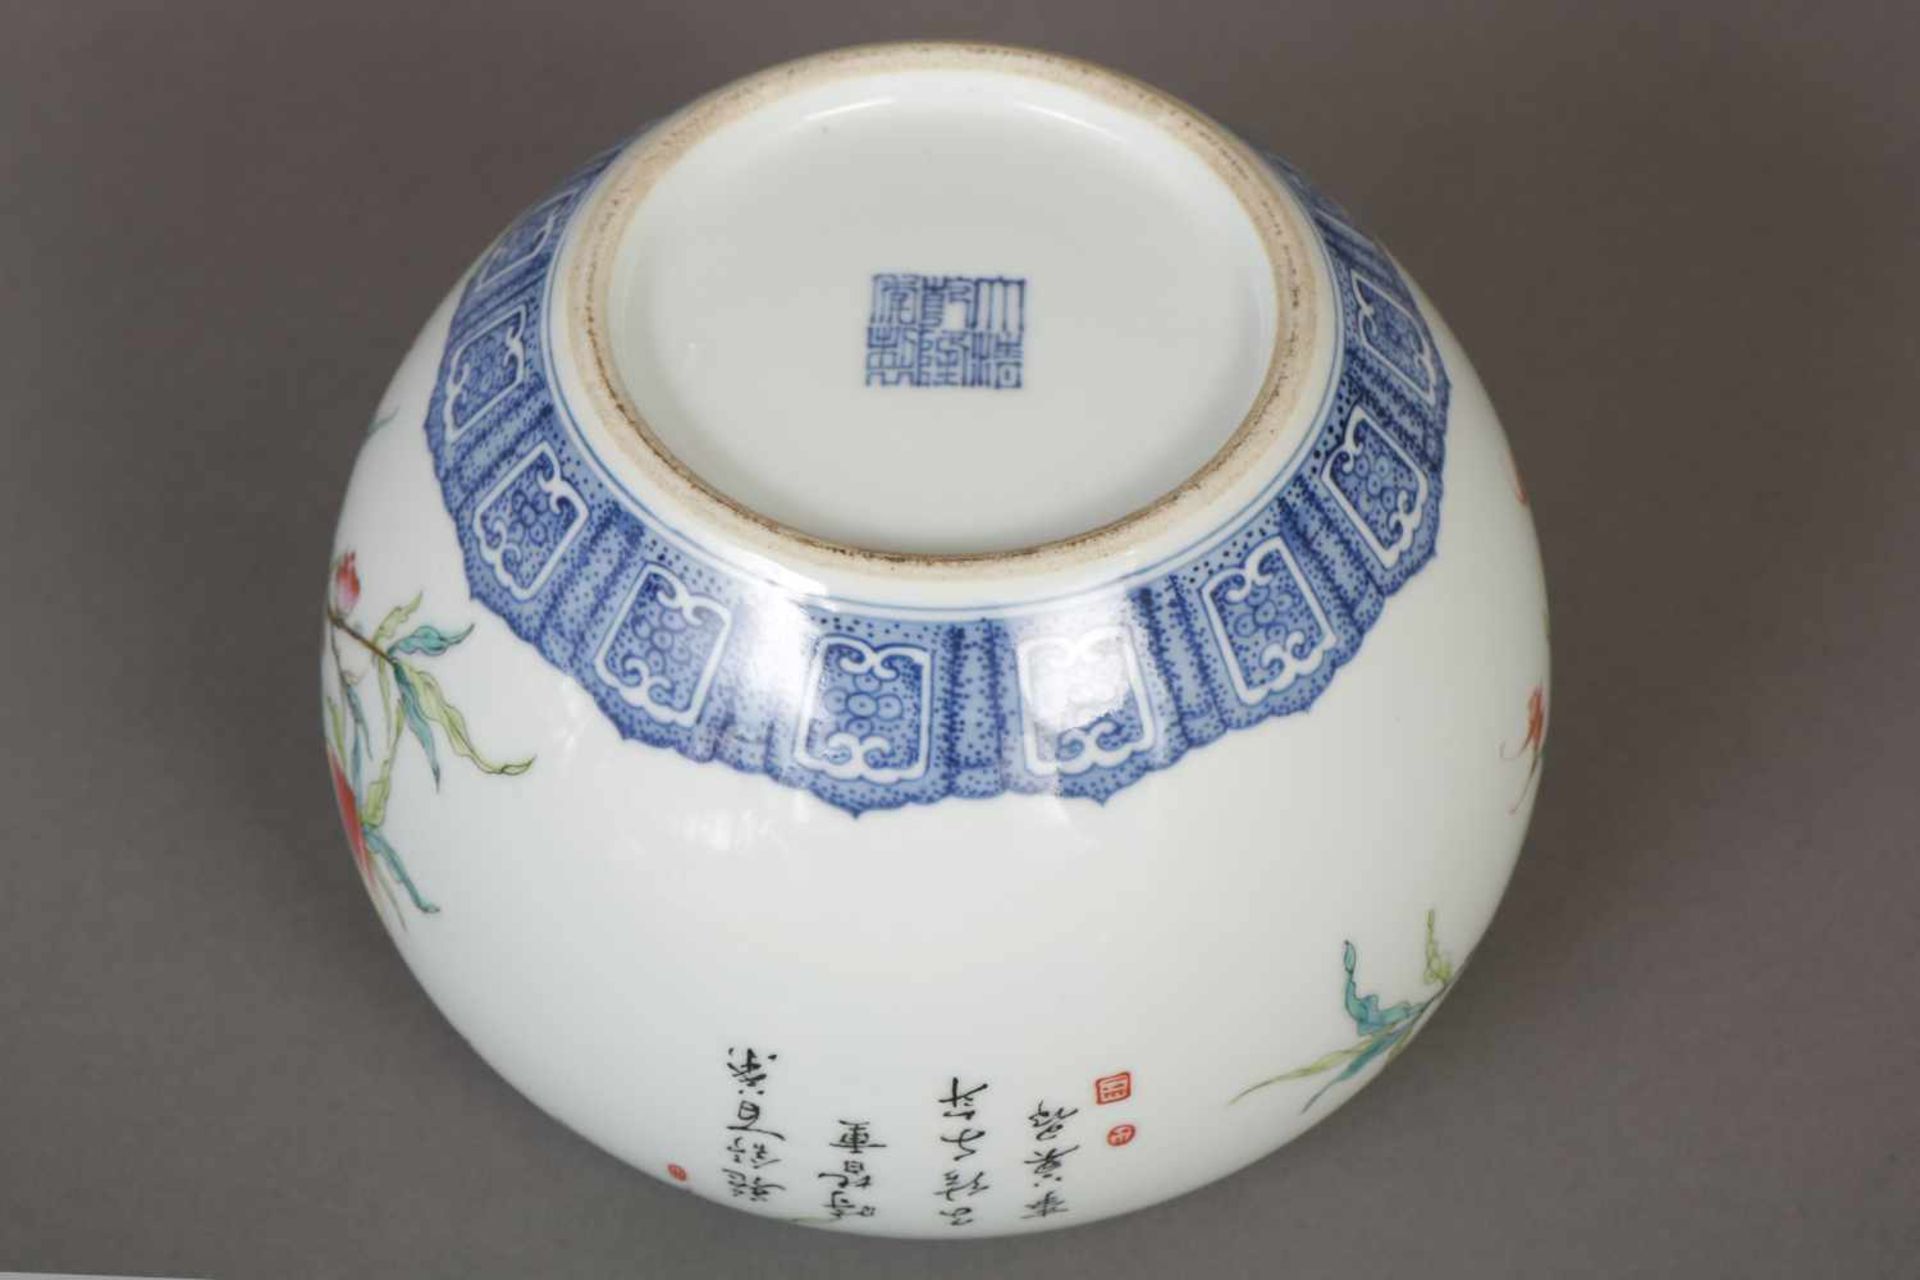 Chinesisches VasengefäßPorzellan, Kugelform mit vertiefter Mündung, blauer Zierrand, umlaufend - Image 3 of 3